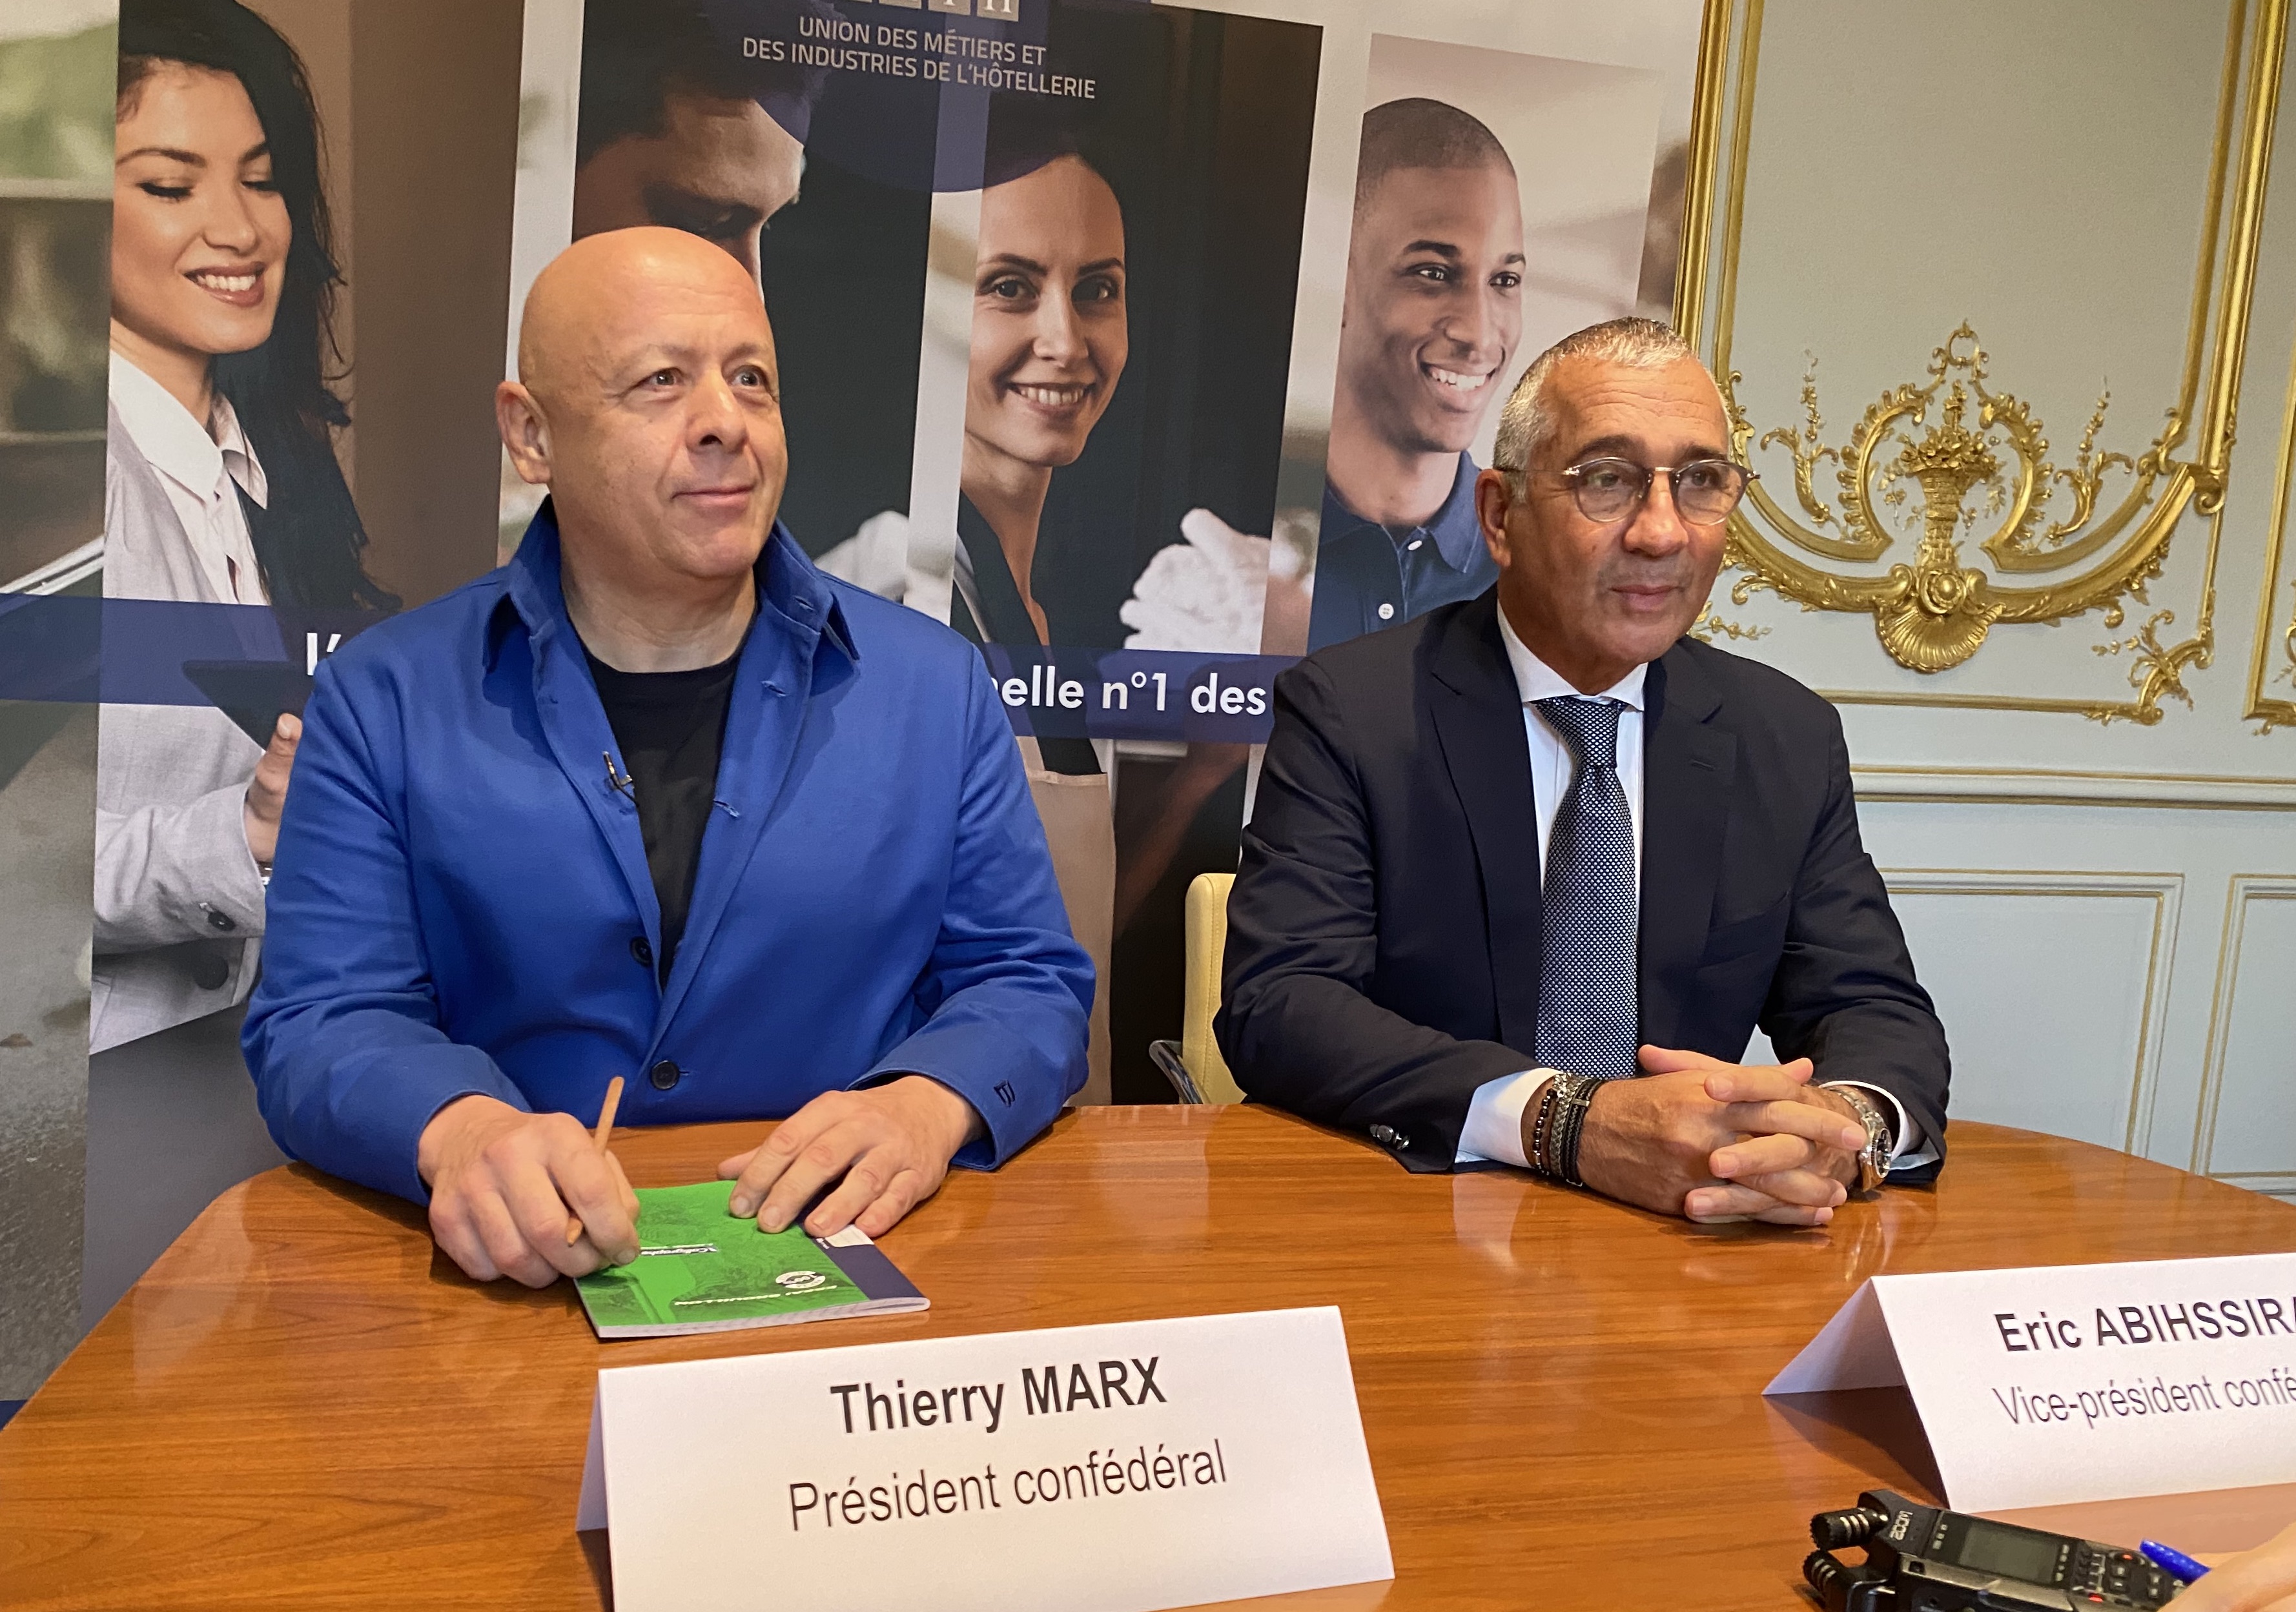 Thierry Marx et Eric Abihssira : le nouveau tandem à la tête de l'Umih pour sa 1ère conférence de presse (©BC)